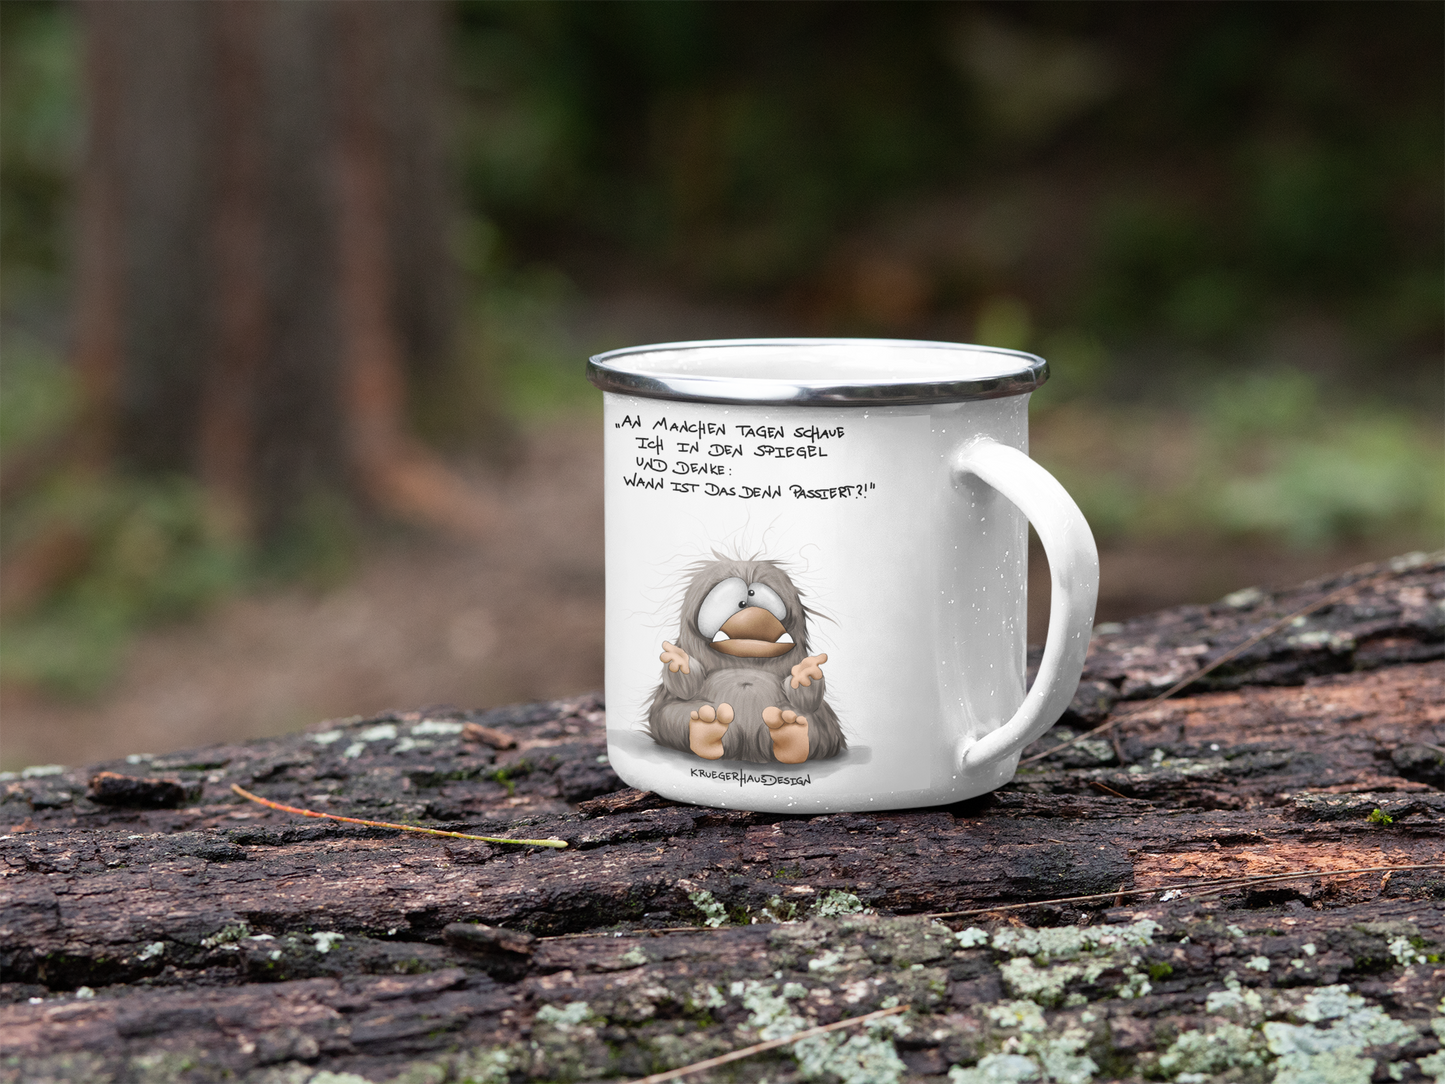 Outdoor Emaille Tasse, Kaffeetasse von Kruegerhausdesign mit Monster und Spruch "An manchen Tagen…“